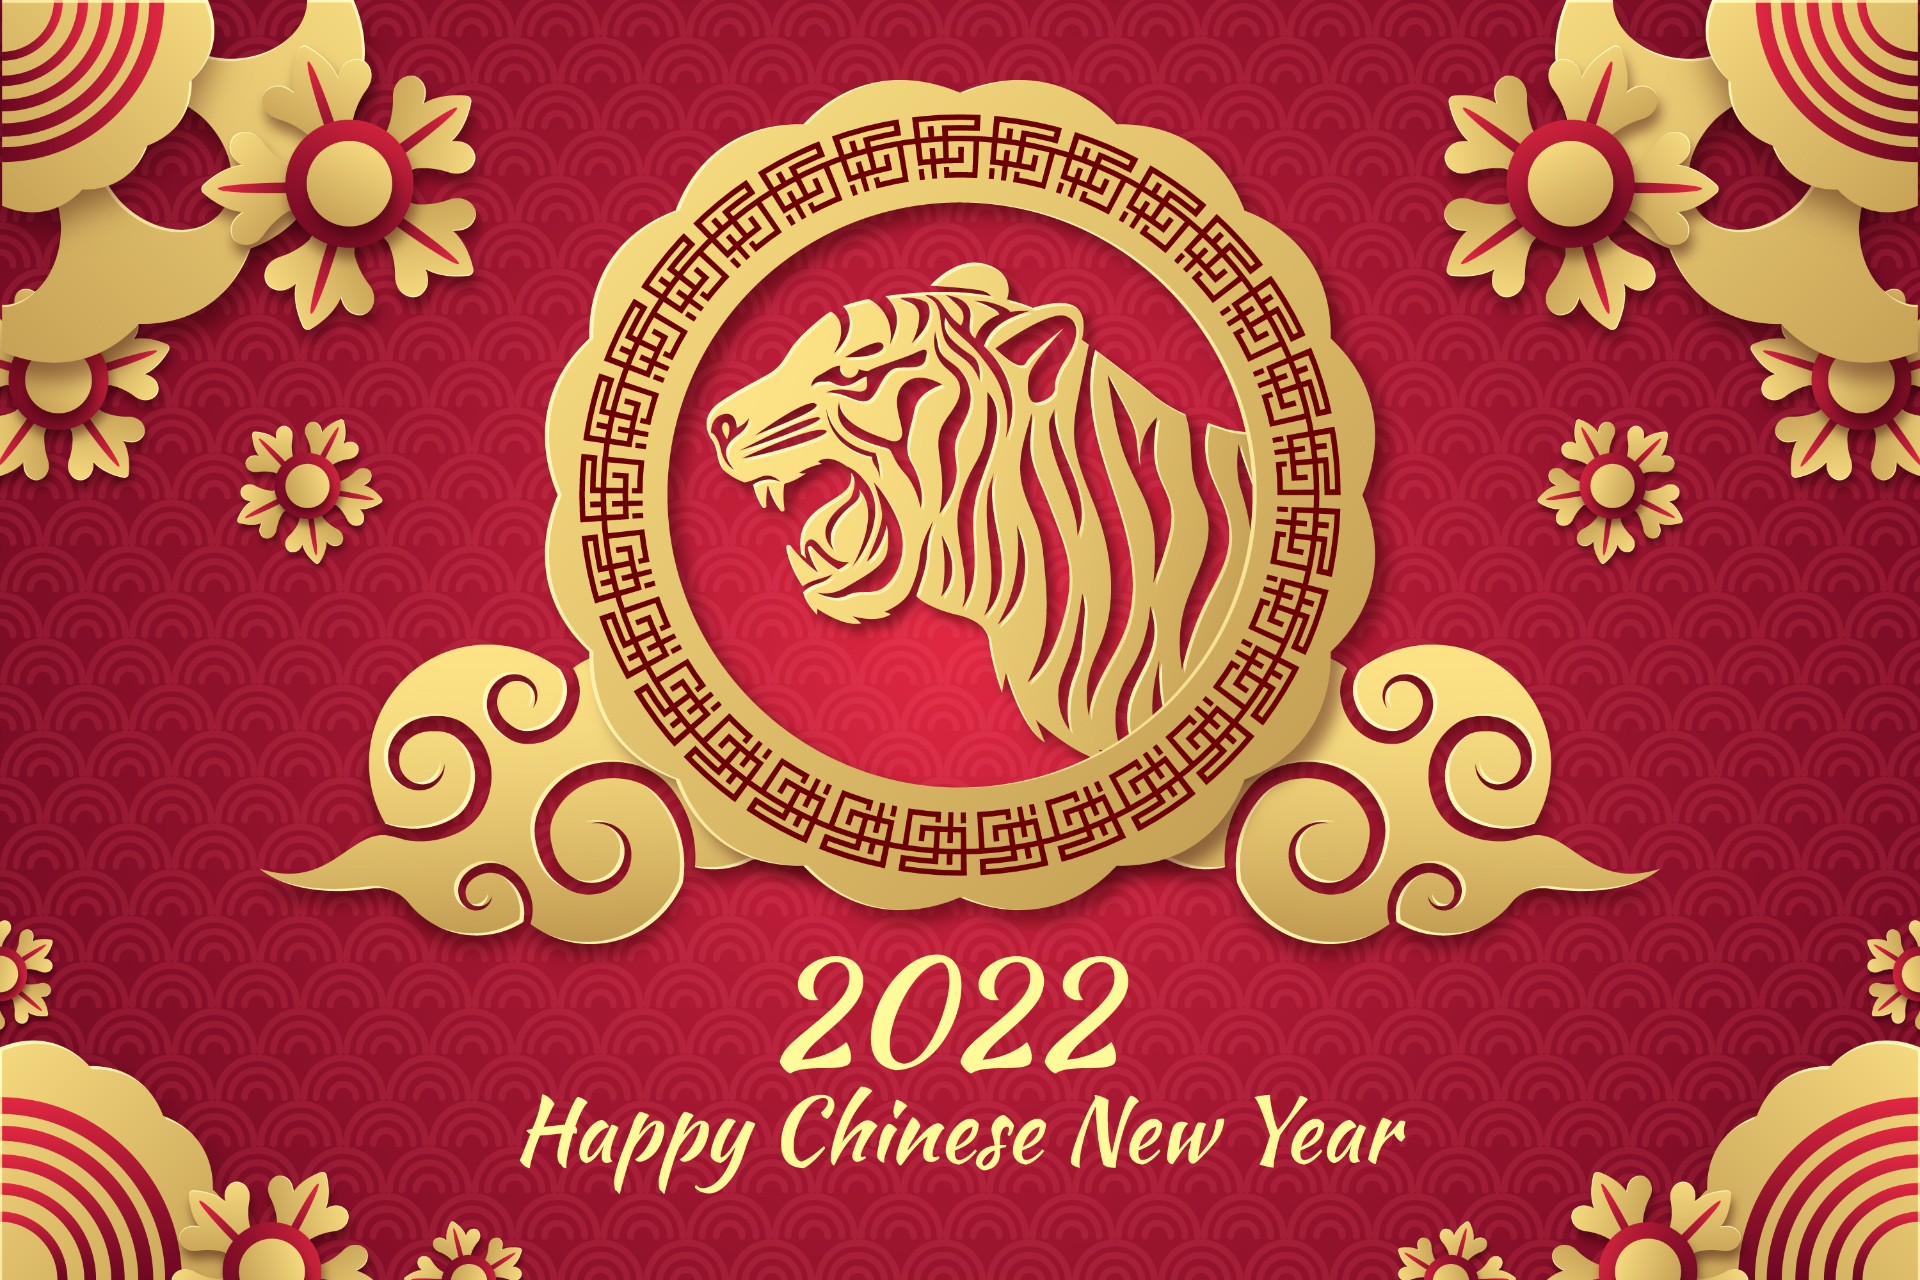 2022剪纸风格中国新年背景插图0